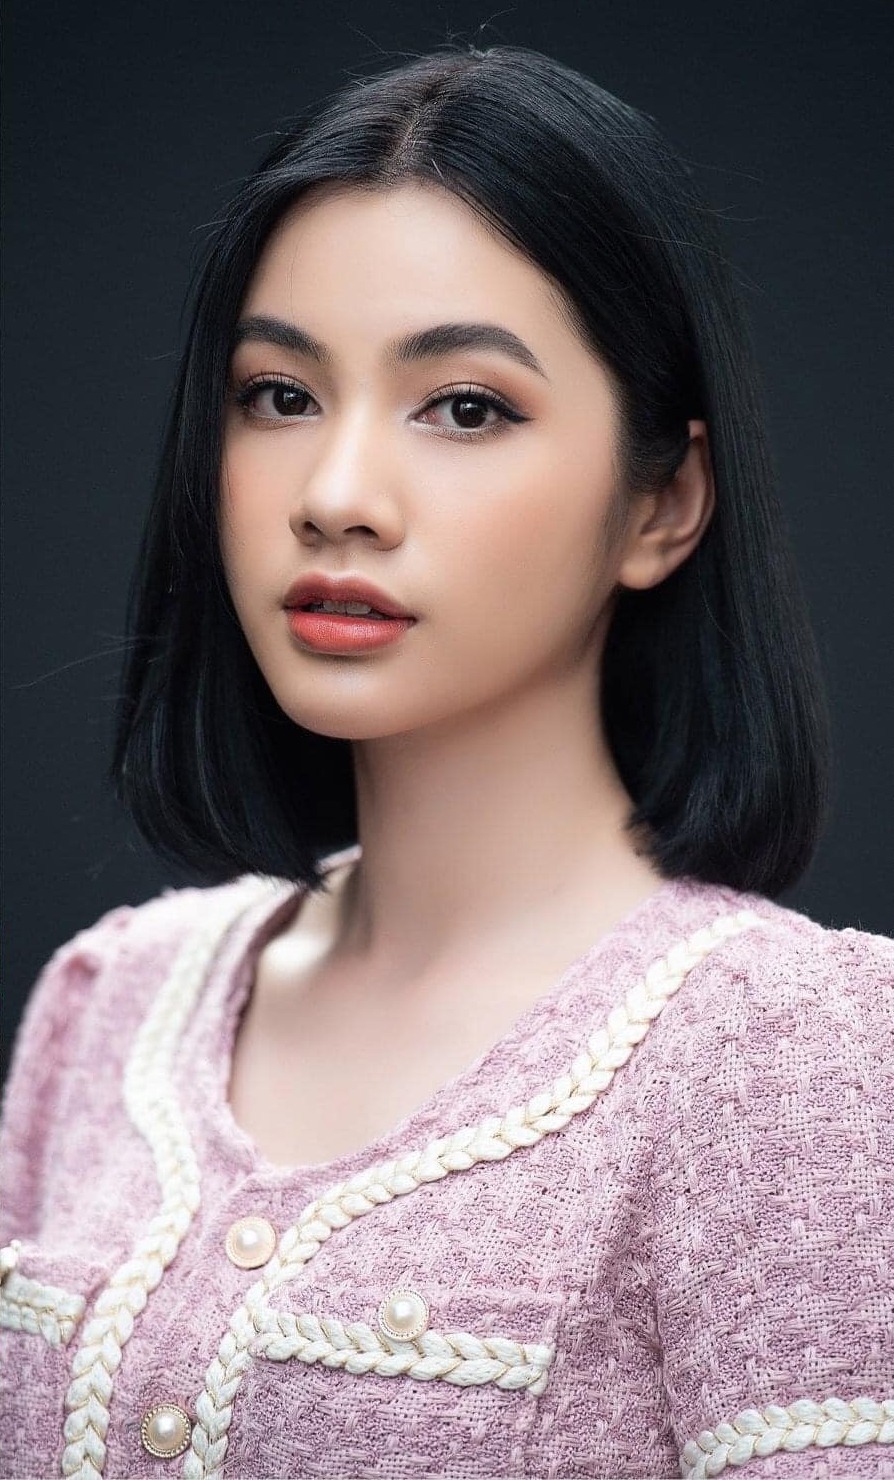 Rất nhiều bình luận trên fanpage Hoa hậu Việt Nam cho rằng cô phù hợp tiêu chuẩn sắc đẹp mới của thế giới - năng động - khỏe khoắn - chiều cao lý tưởng 1,72 m với số đo ba vòng là 83-64-92 cm.